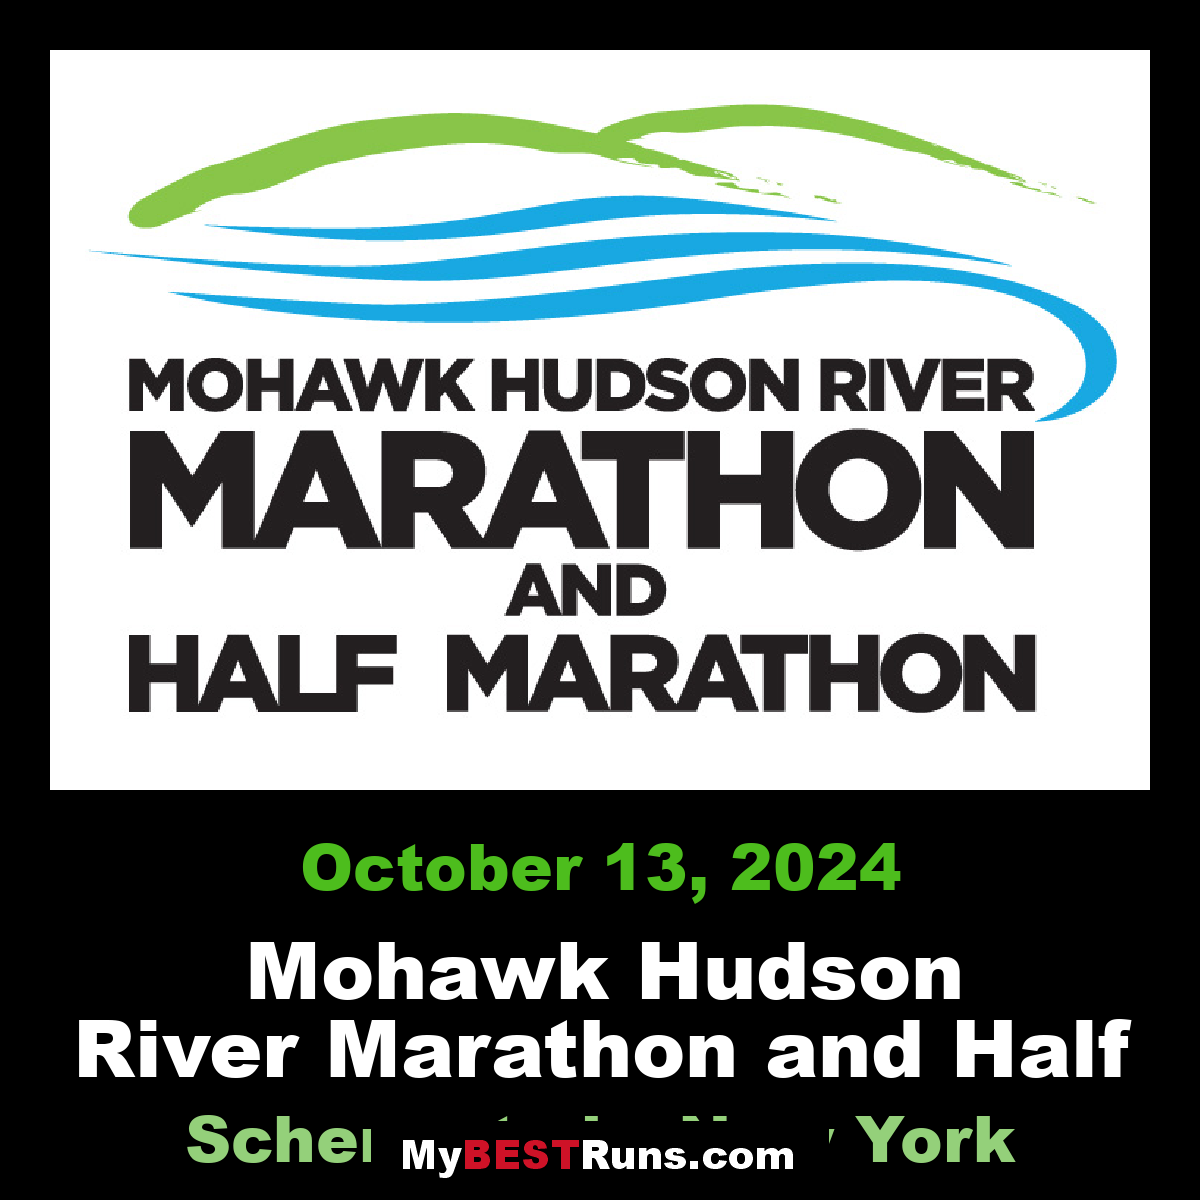 Mohawk Hudson River Marathon and Half Marathon Schenectady, New York